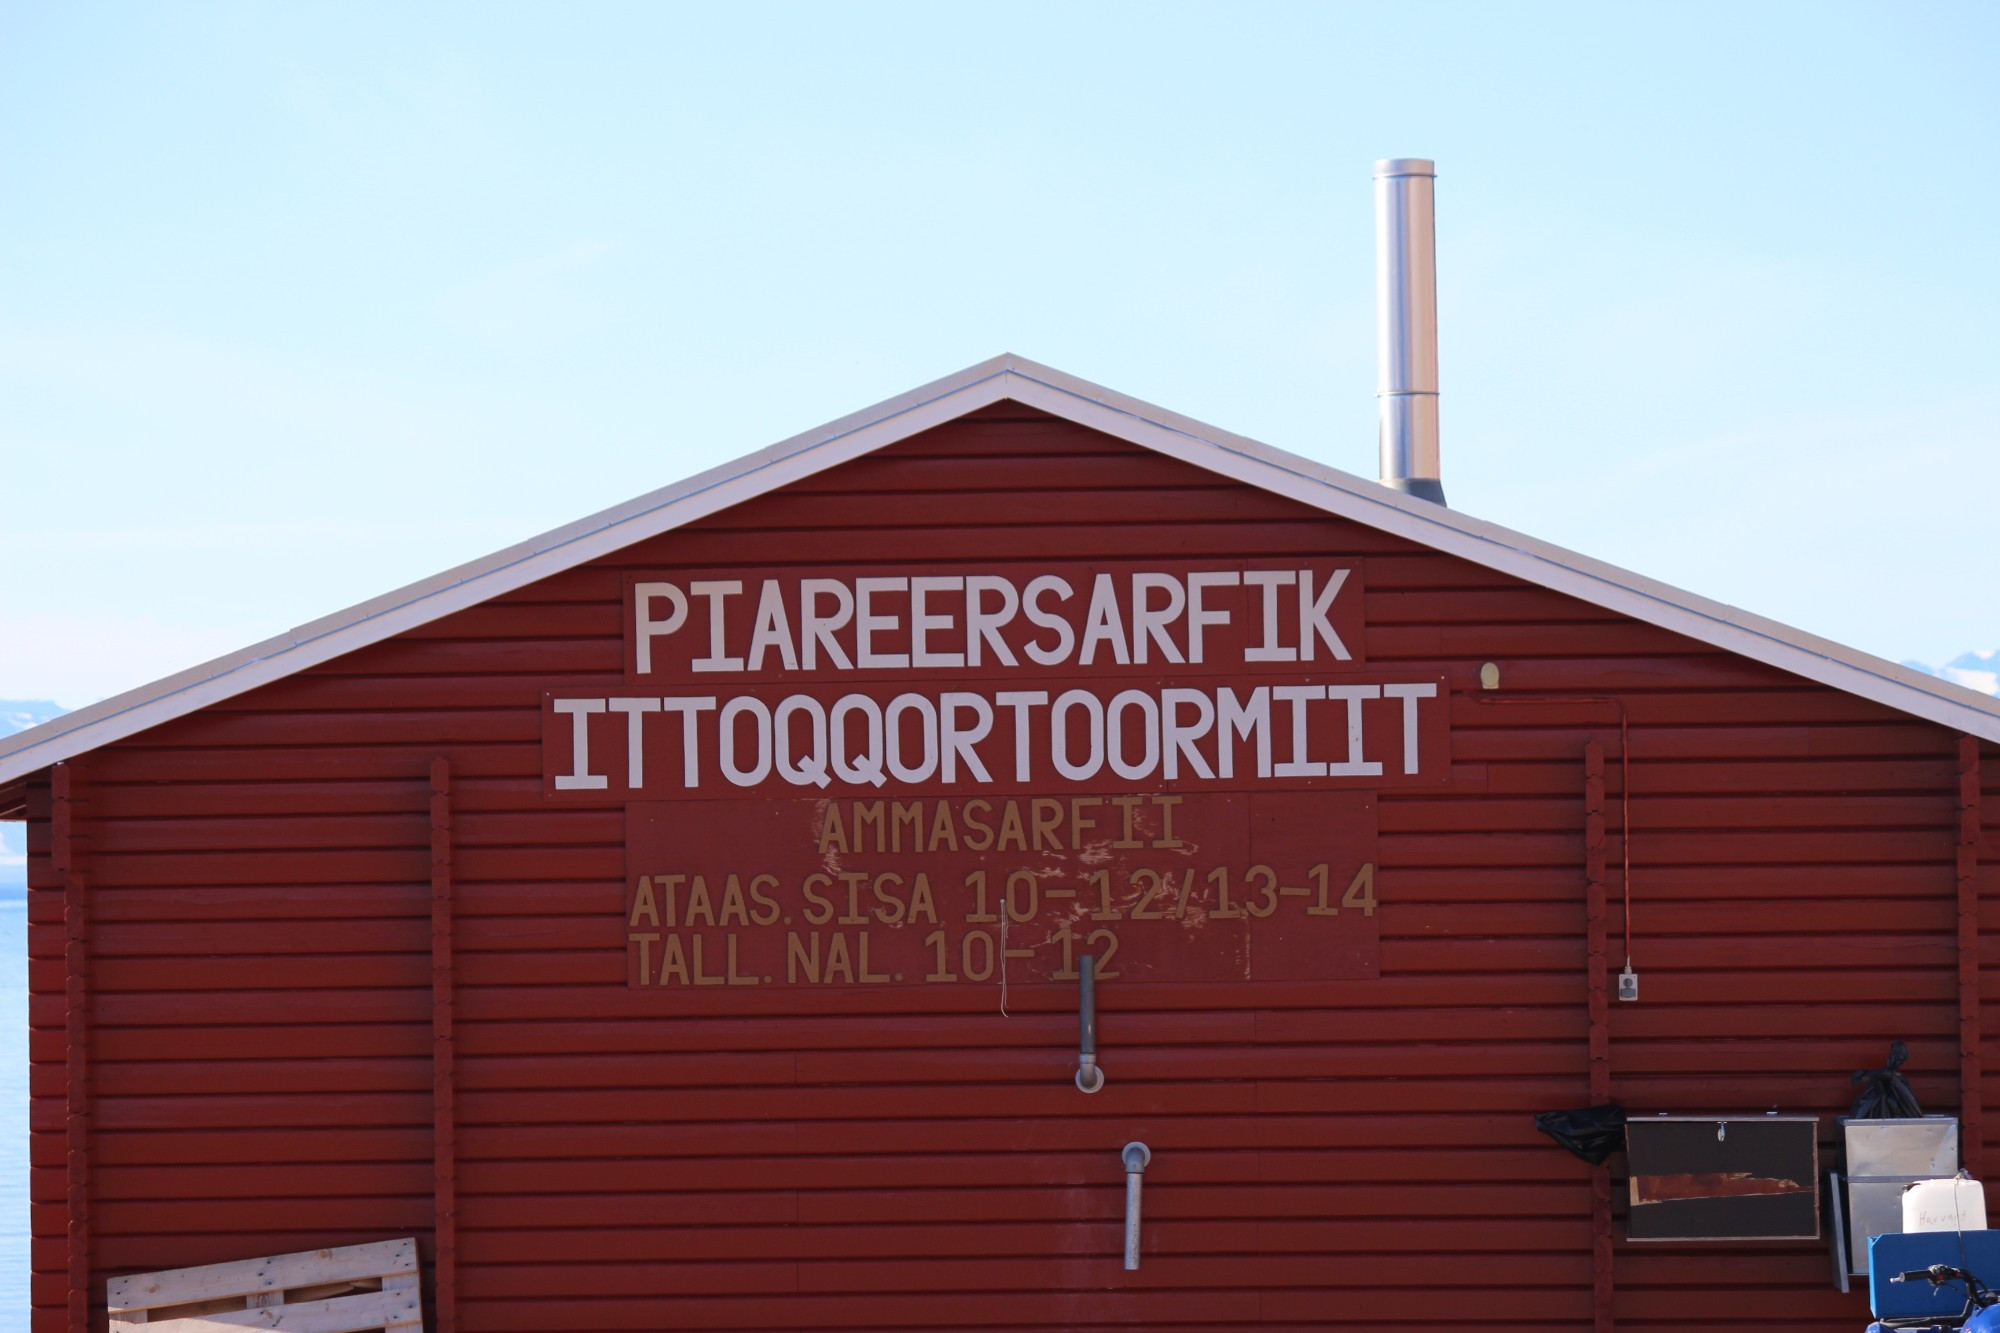 Ittoqqortoormitt, Greenland